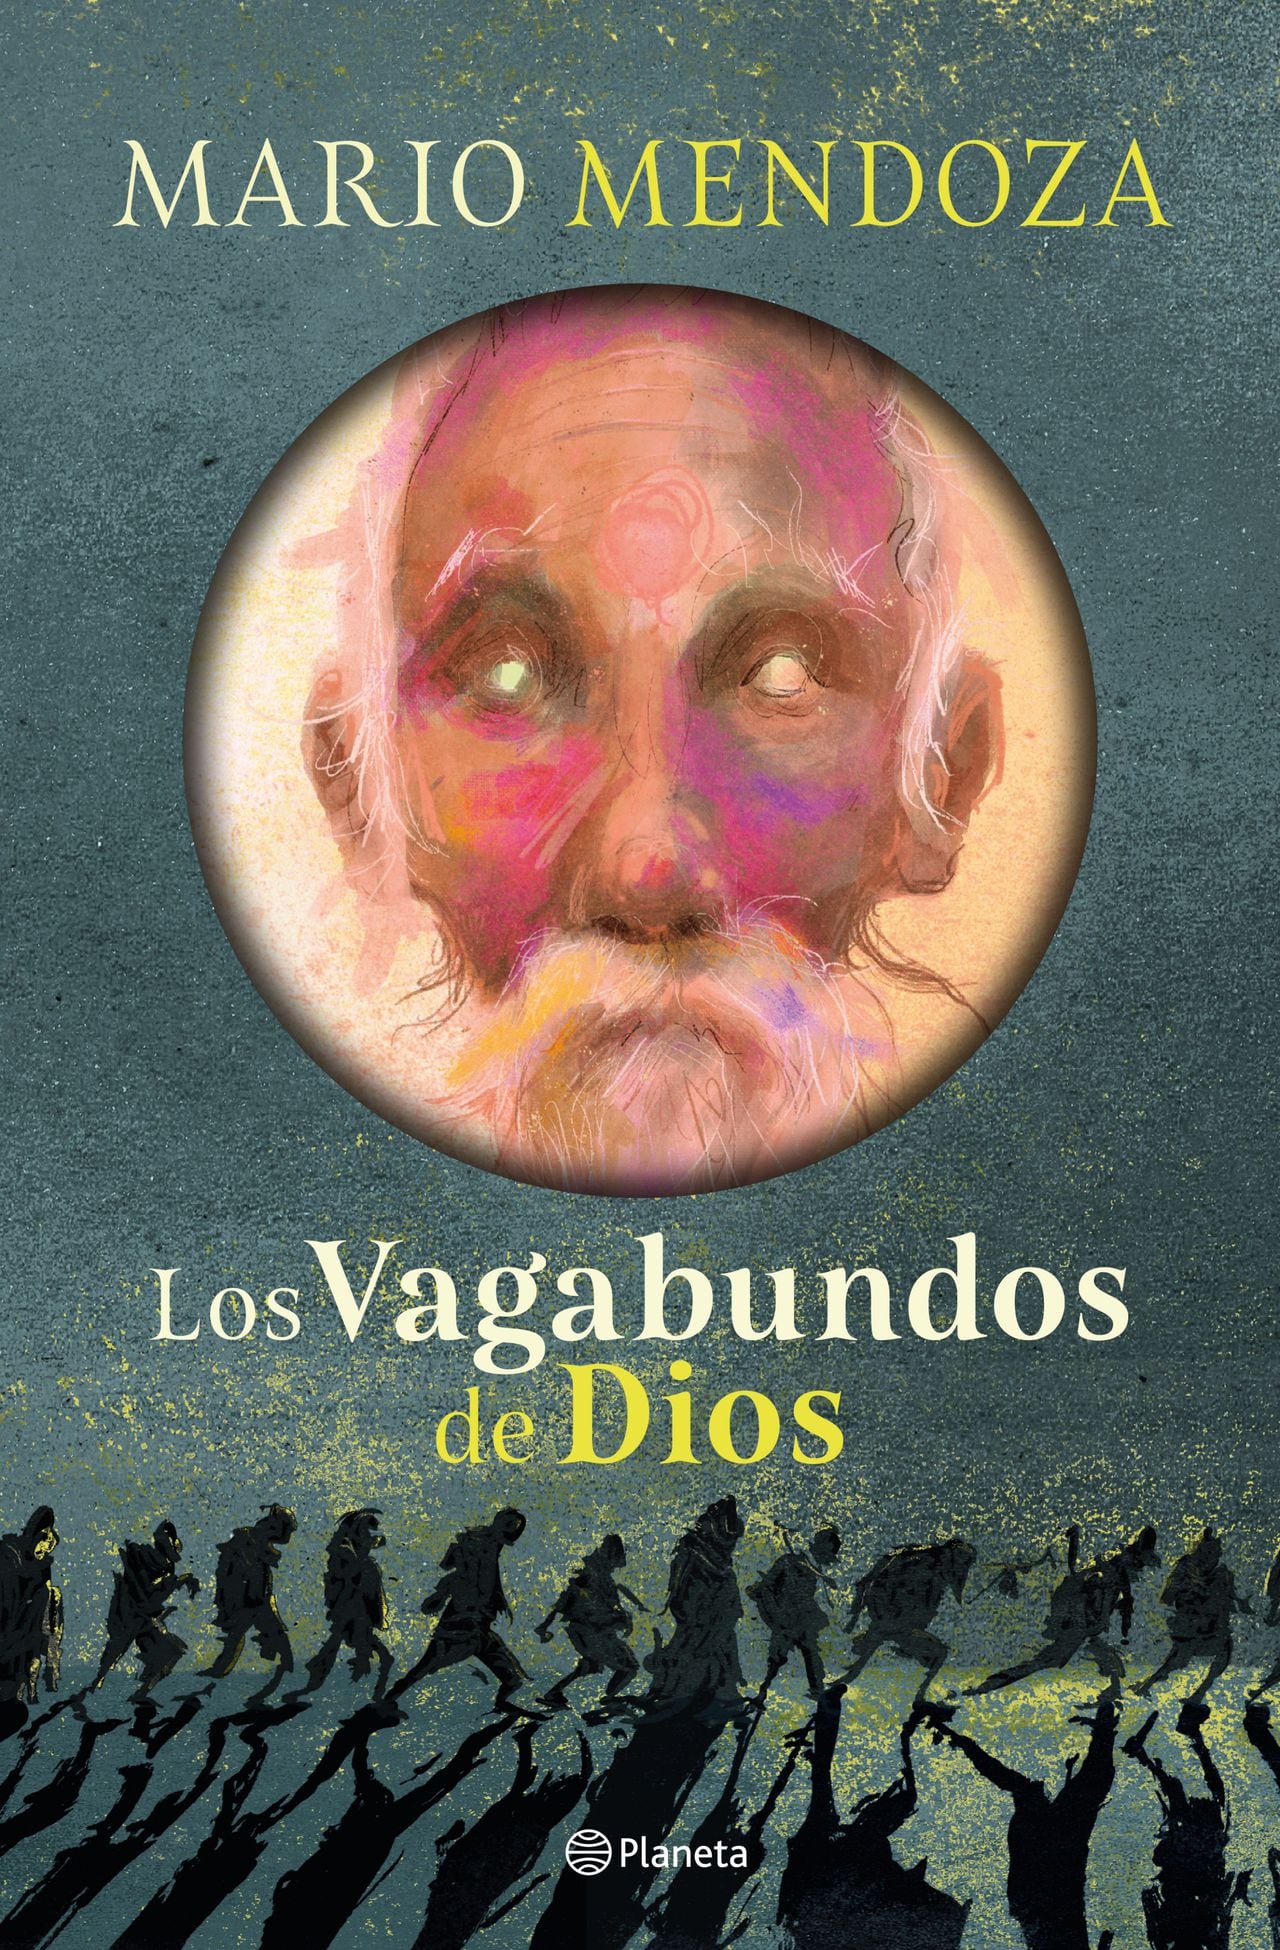 'Los vagabundos de Dios', del escritor Mario Mendoza.